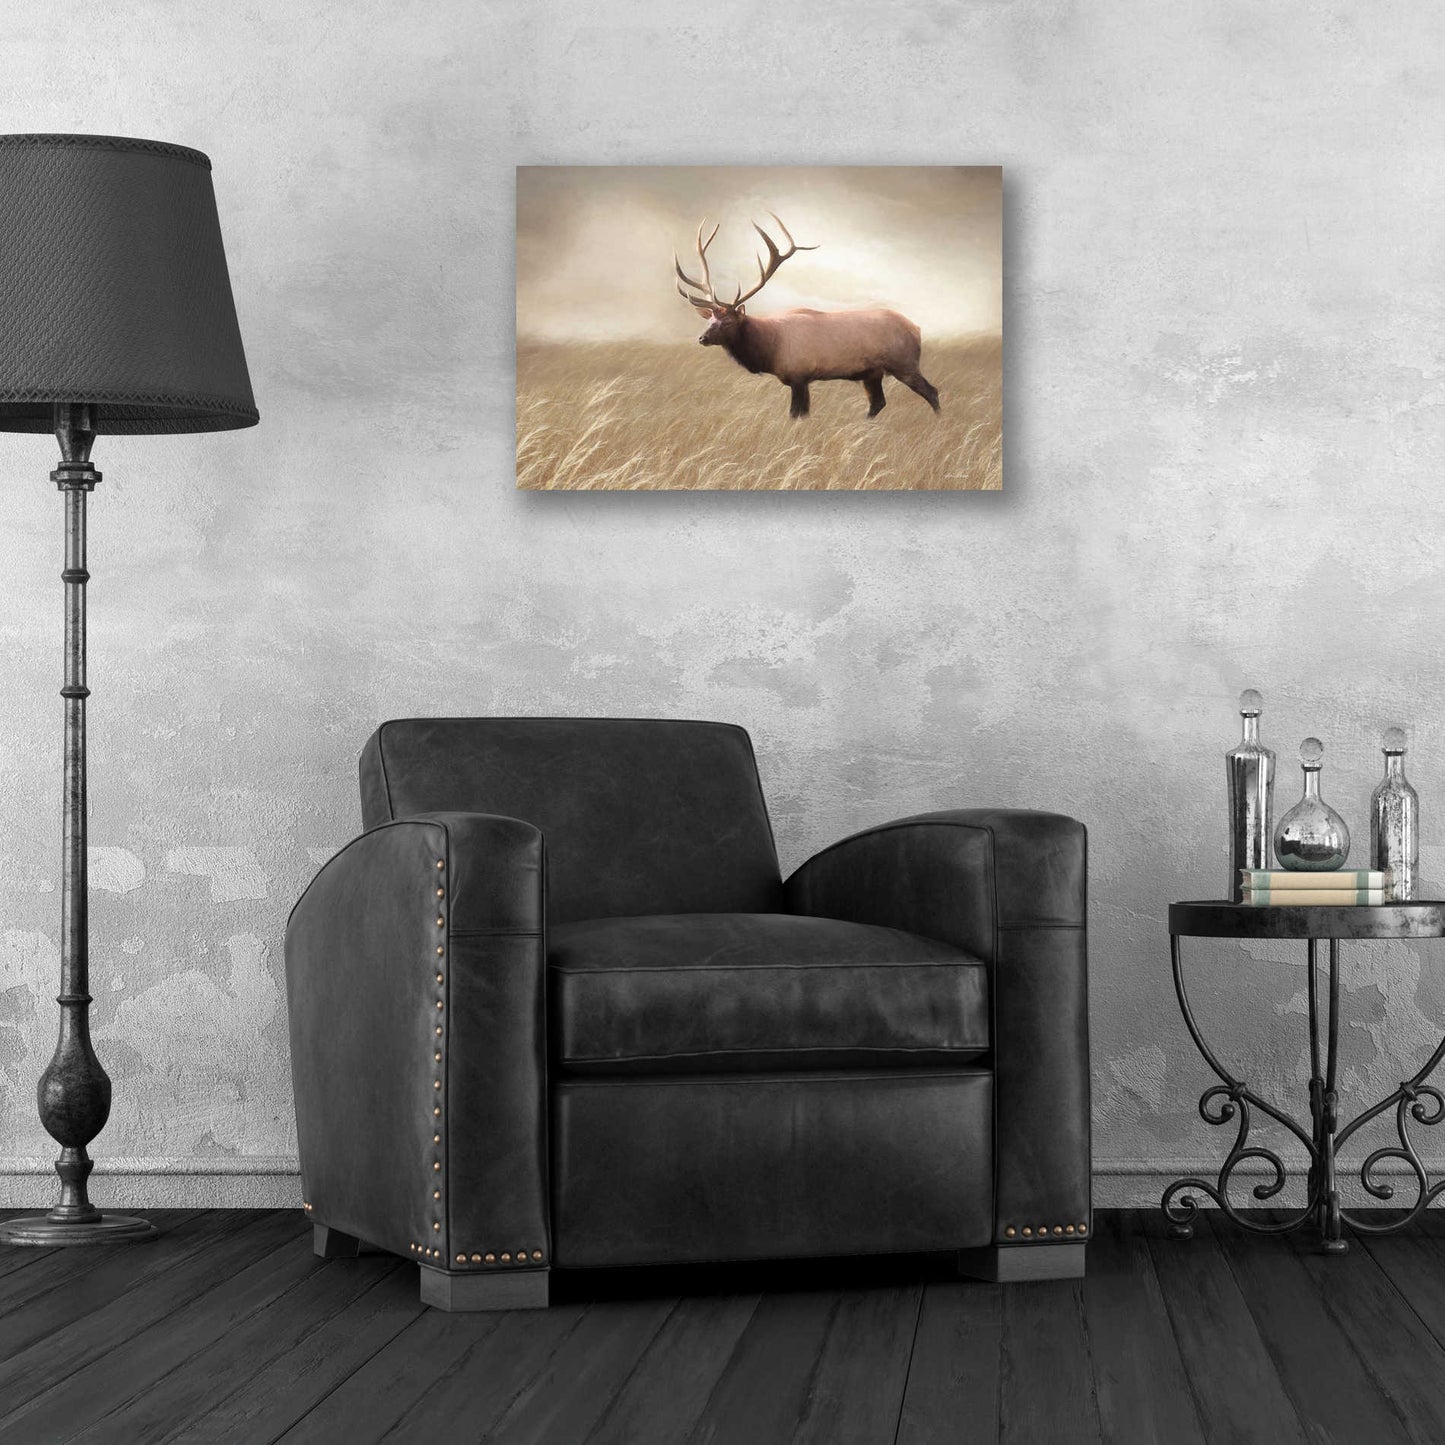 Epic Art 'Elk in the Field' by Lori Deiter, Acrylic Glass Wall Art,24x16